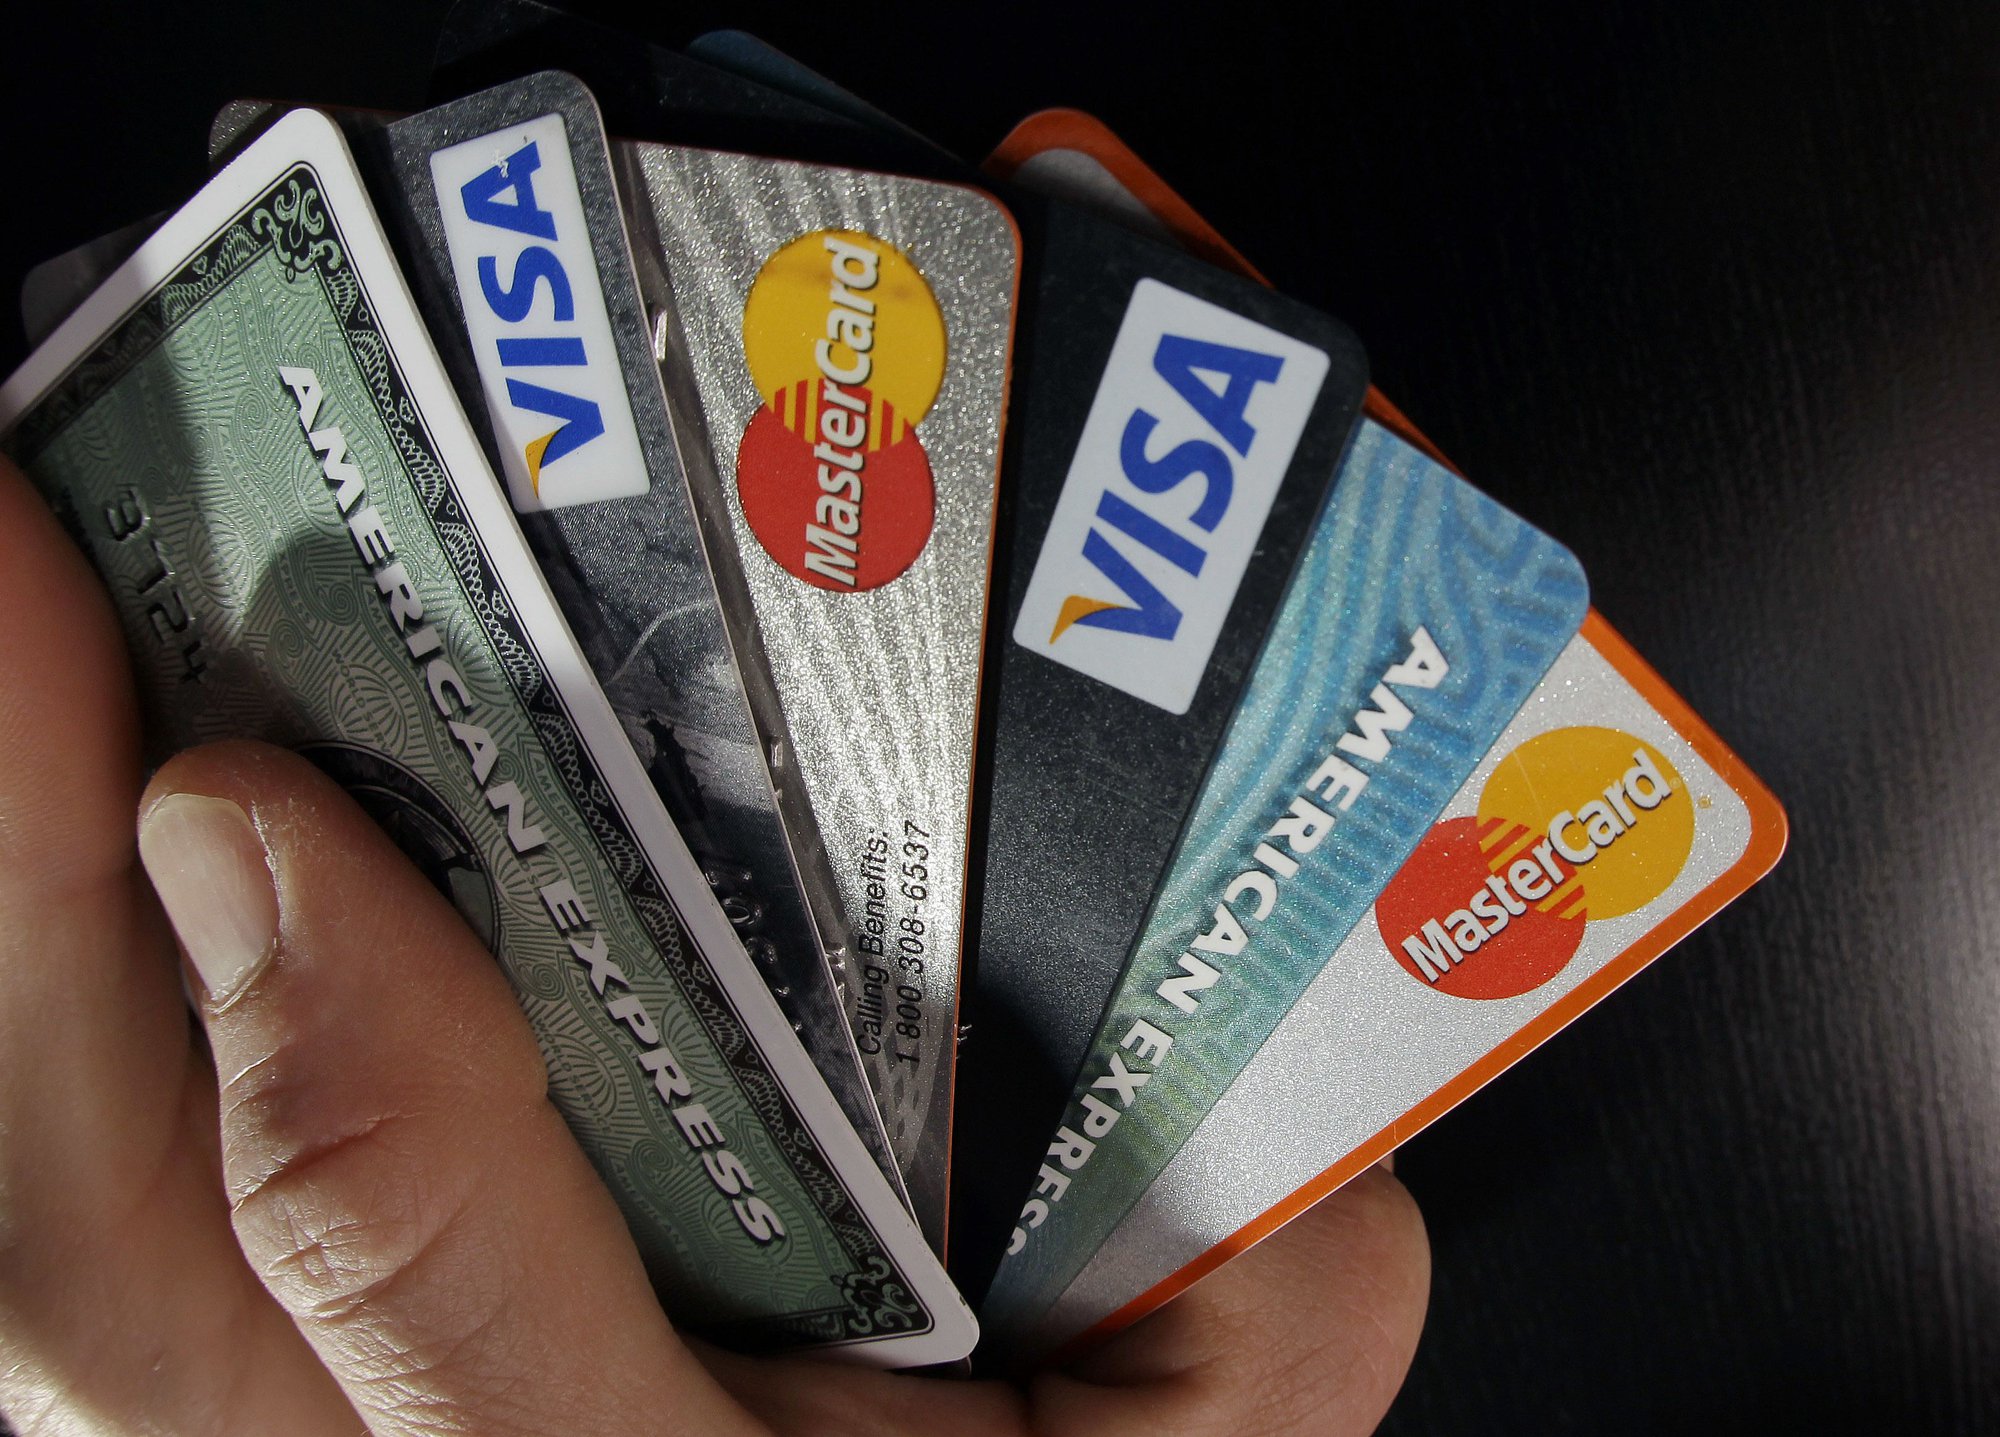 Dùng thẻ tín dụng không bao giờ sợ ngập trong nợ nếu biết 3 bí kíp này